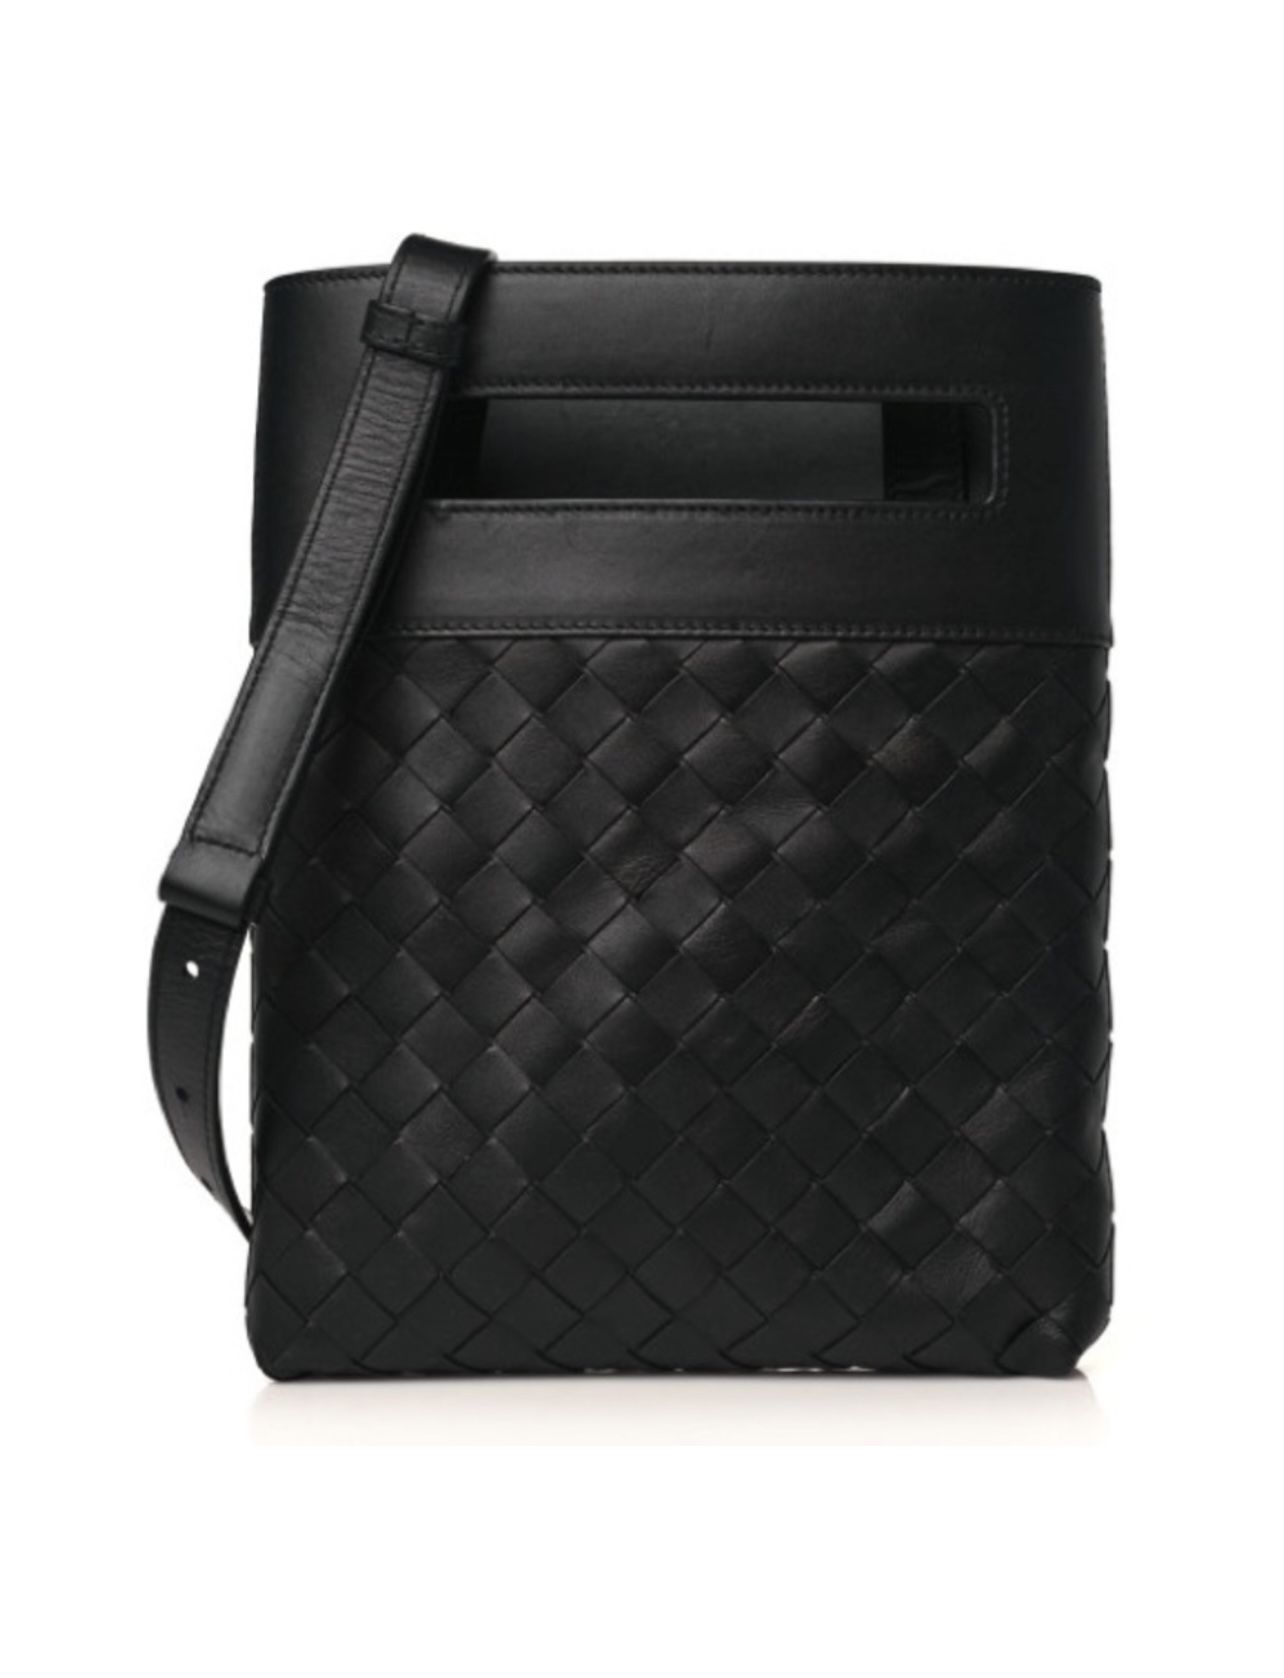 BOTTEGA VENETA Nappa Intrecciato VN leather Crossbody Messenger Bag Black